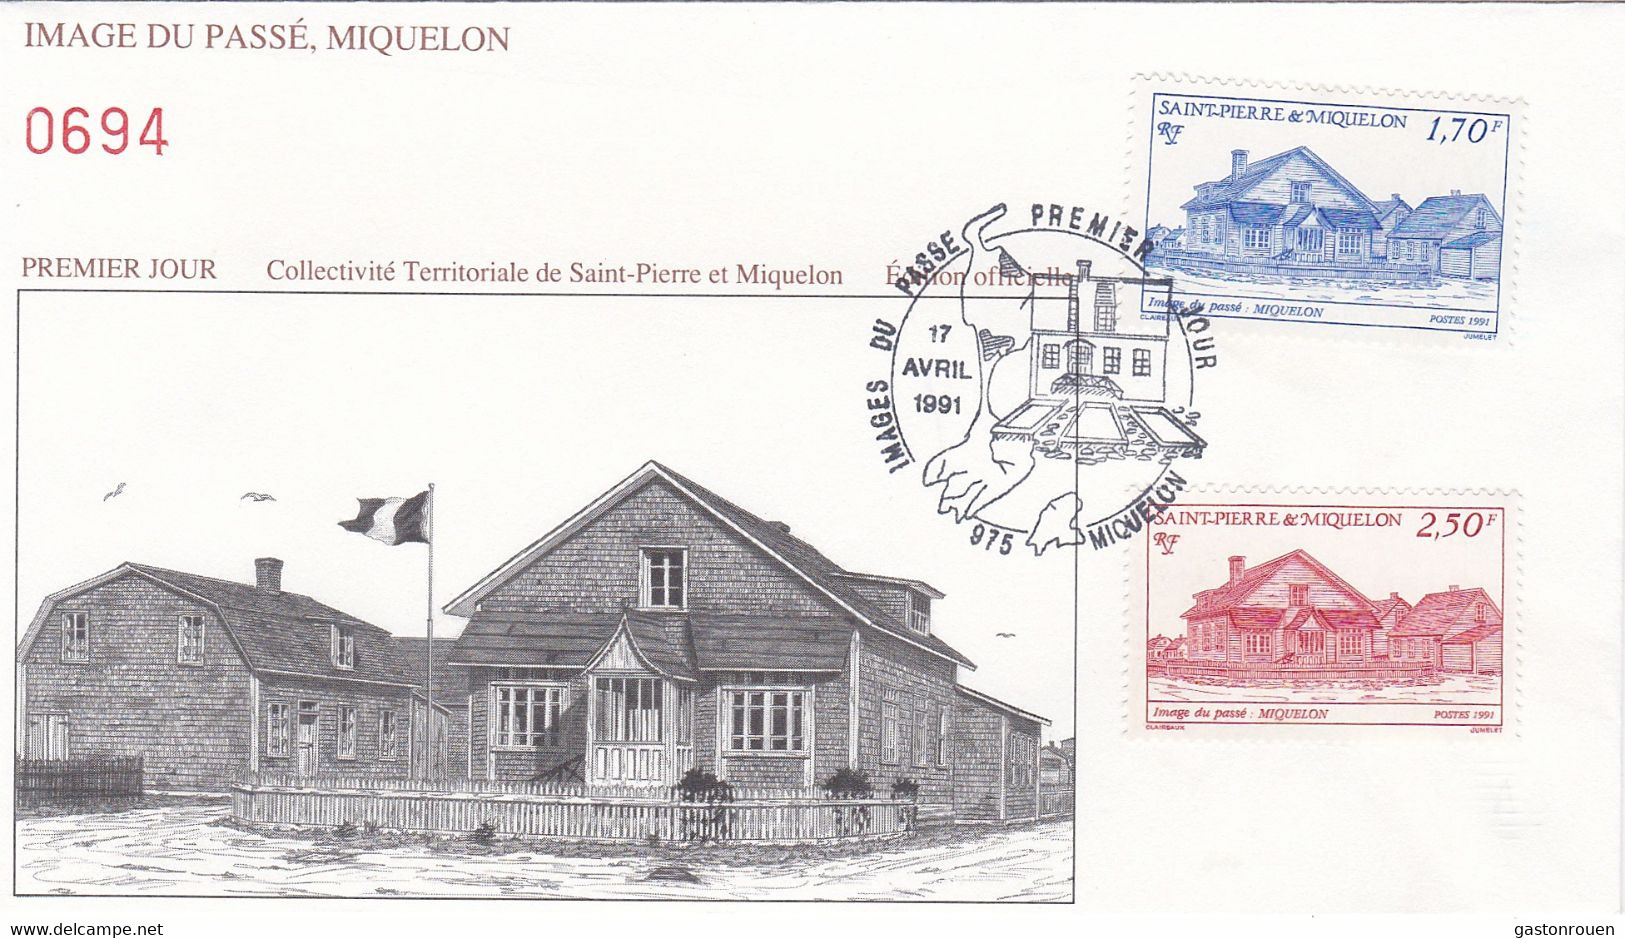 St Pierre & Miquelon PREMIER JOUR FDC 1991 539 543 Images Du Passé - FDC